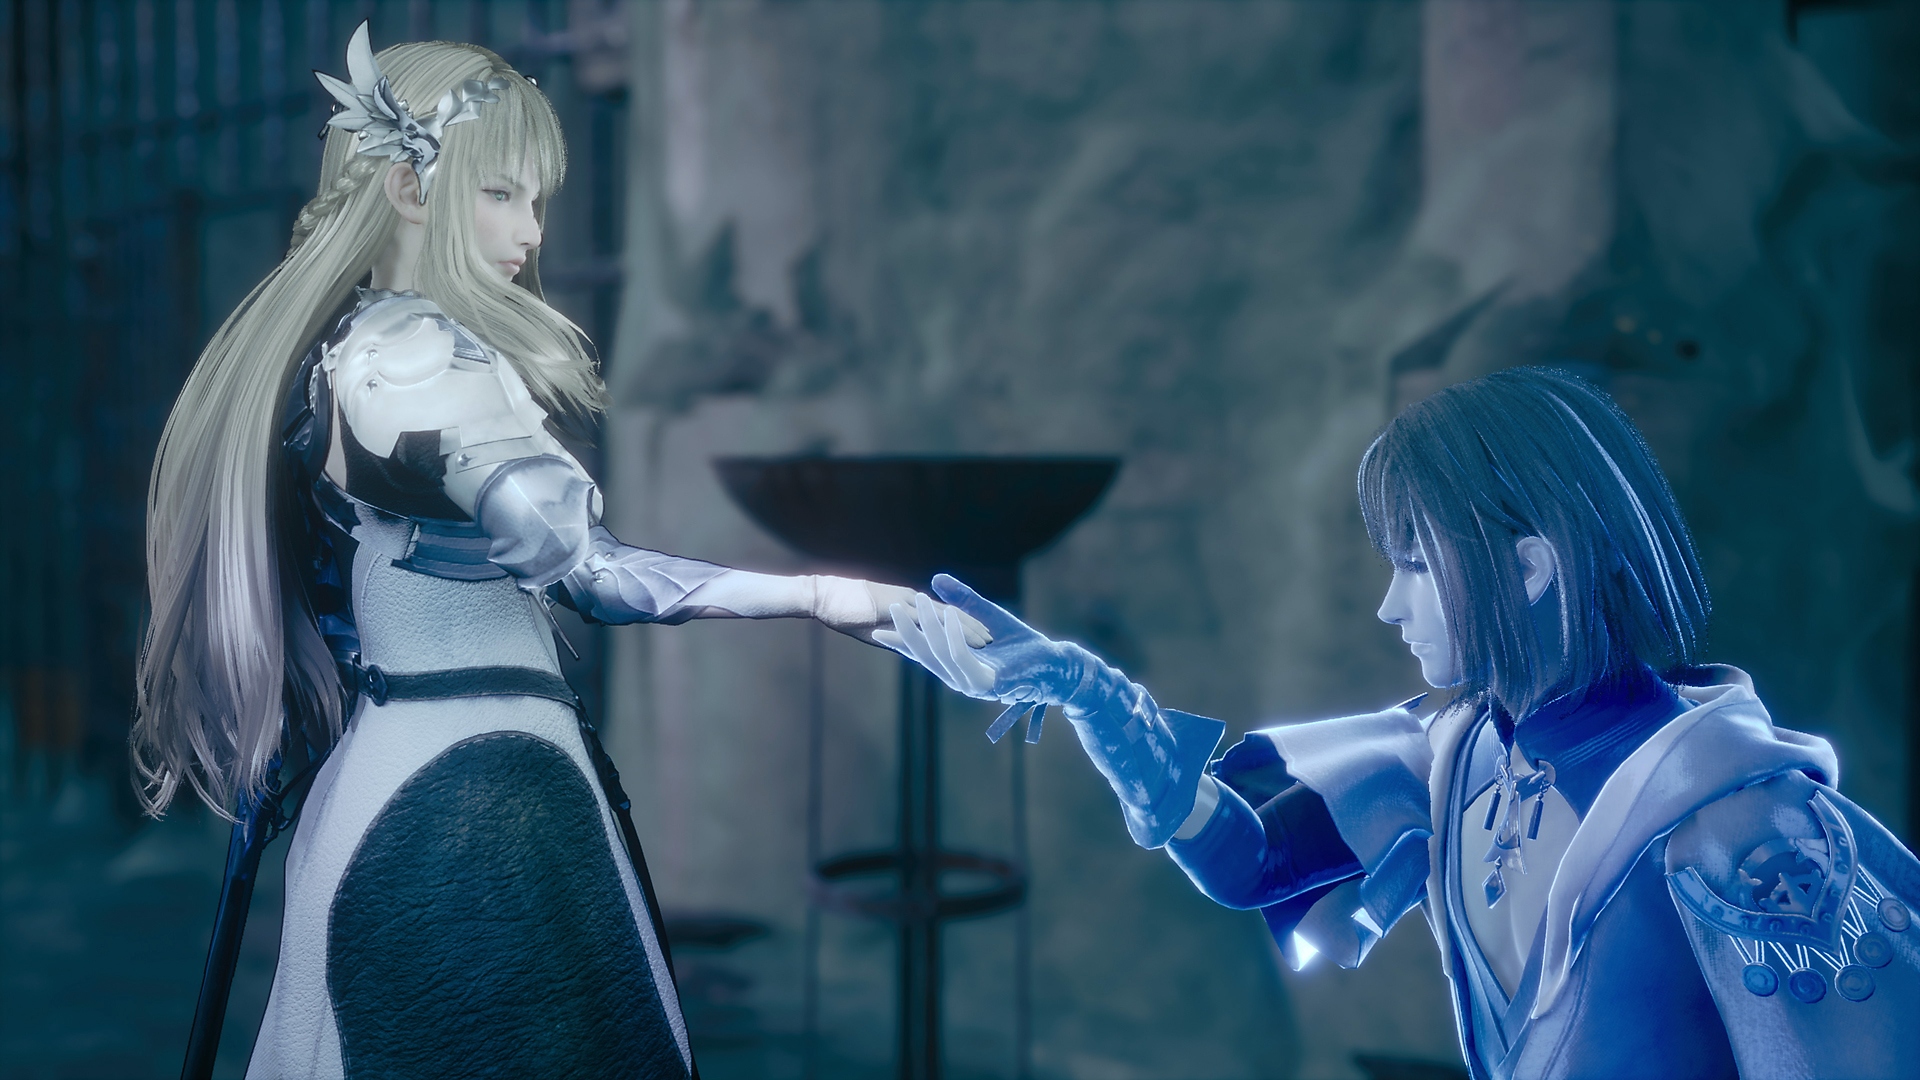 لقطة شاشة للعبة Valkyrie Elysium يظهر فيها فارس أزرق متوهج وهو يركع أمام شخصية أميرة